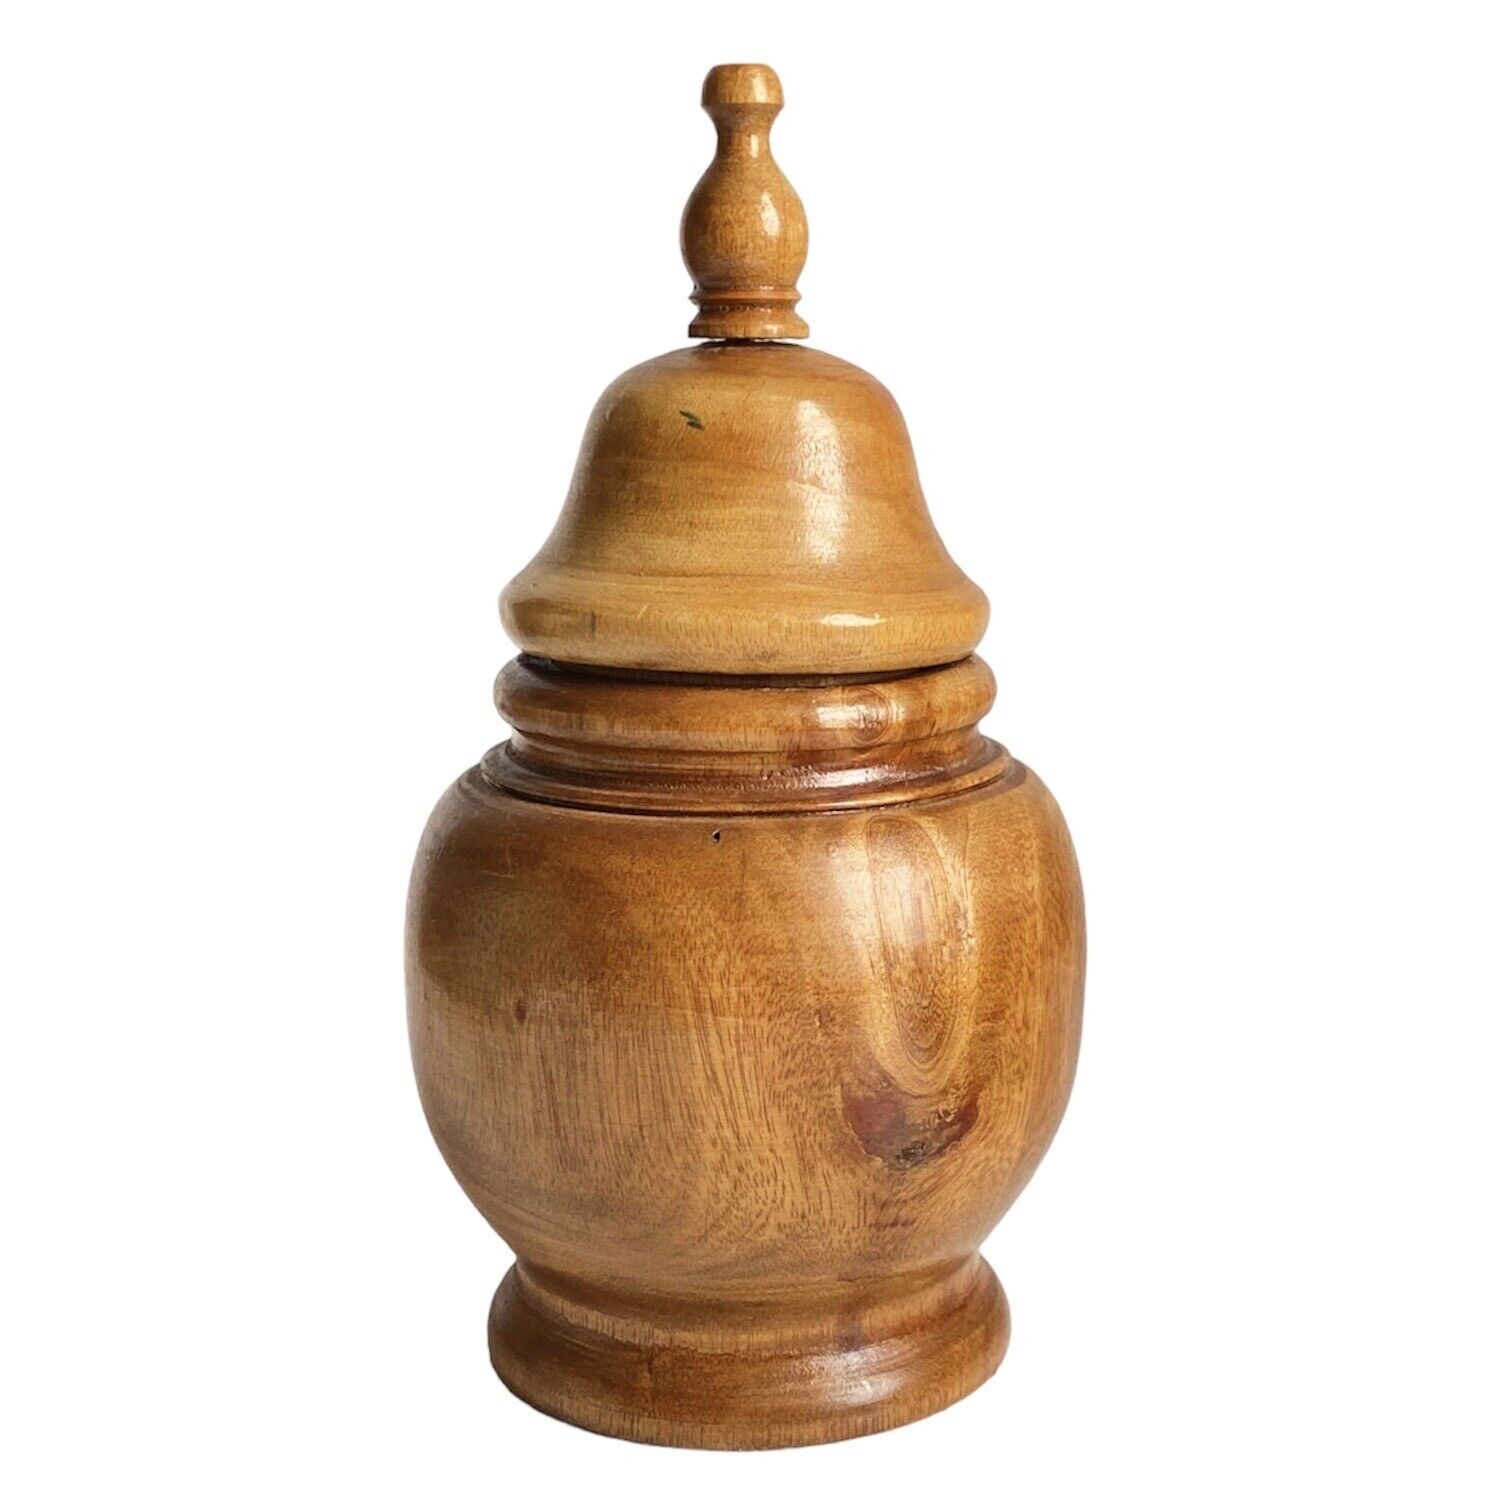 Vtg Turned Wood Vase Urn Ginger Jar Temple Jar with Lid Trinket Treen Signed